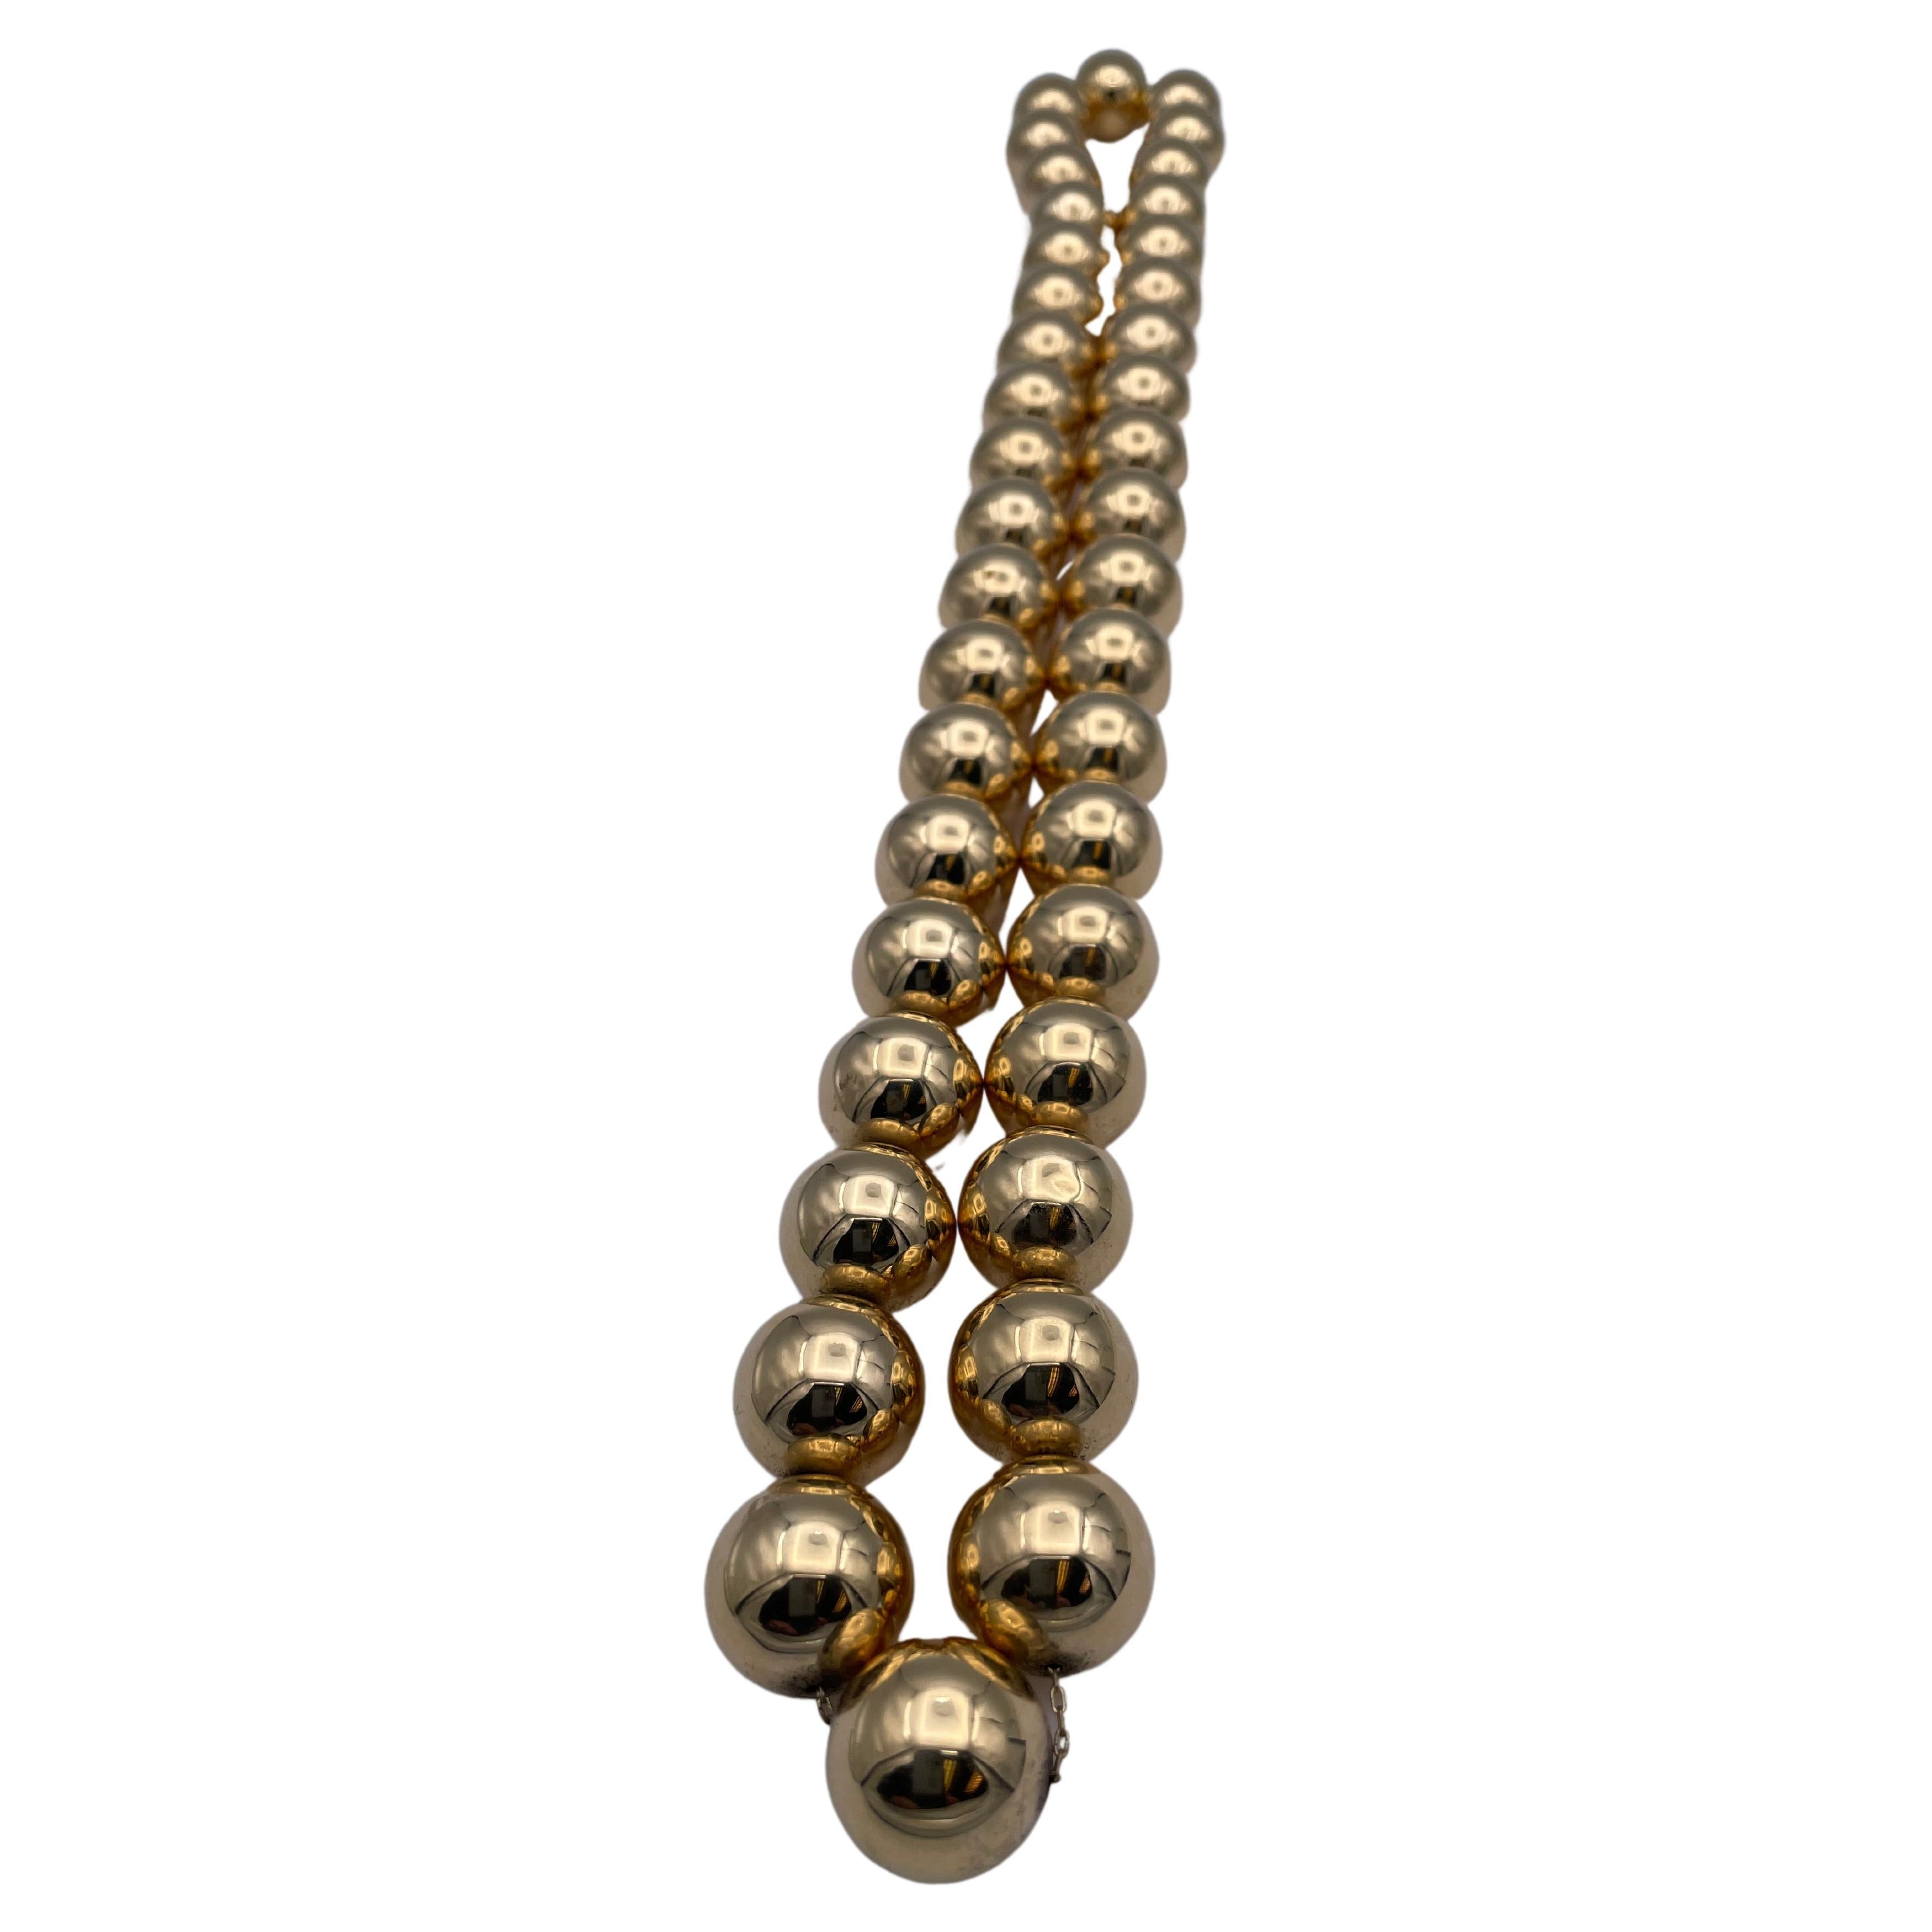 Le meilleur collier de boules d'or jamais vu.  Composé de quarante grosses boules en or. Chaque boule fait 20 mm.   30